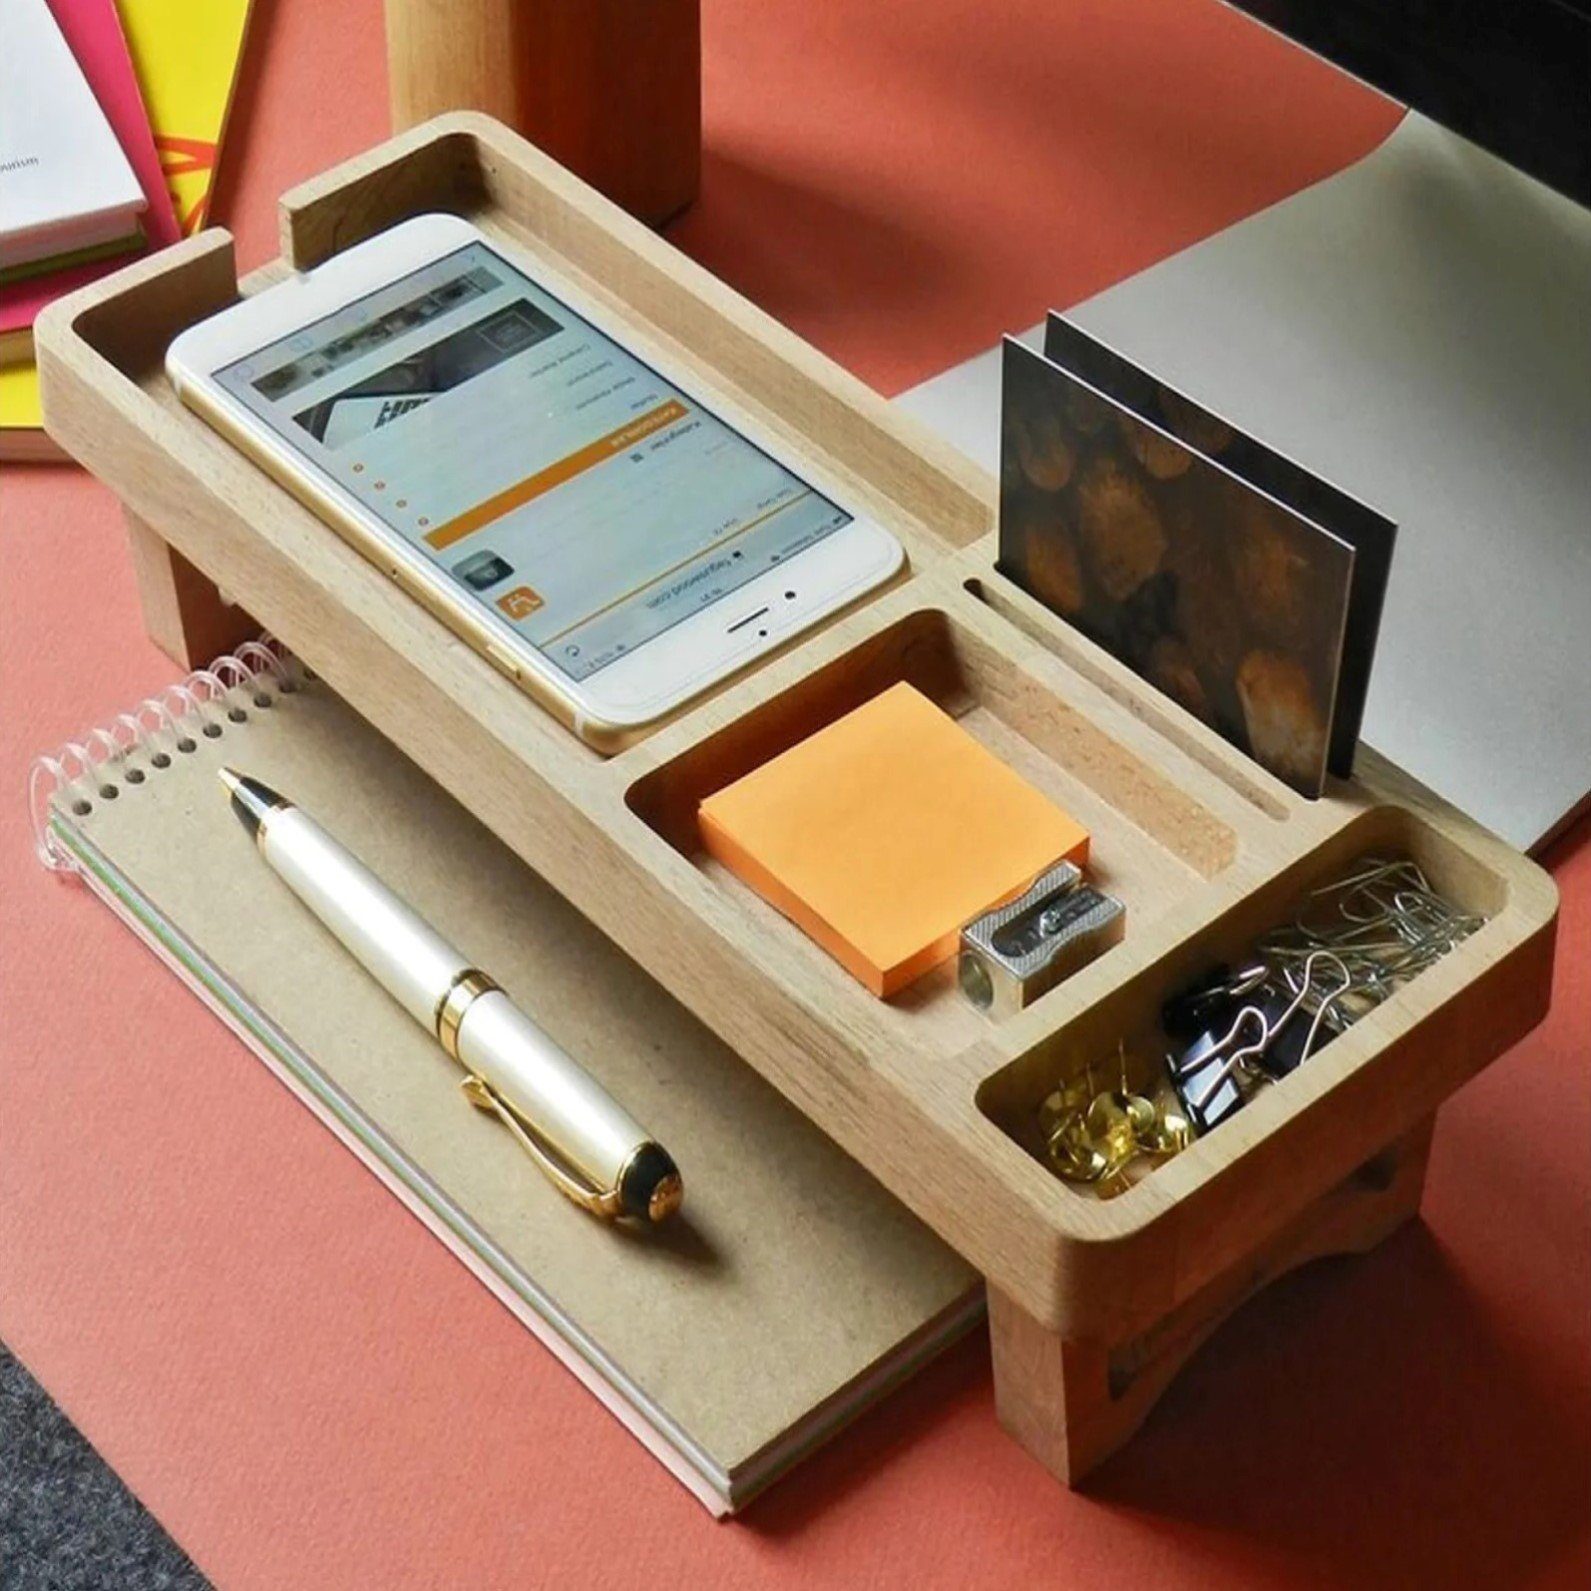 12 Holz 32 cm x Organizer, Schreibtischaufsatz - 6 Moblix Schreibtischzubehör x CATE